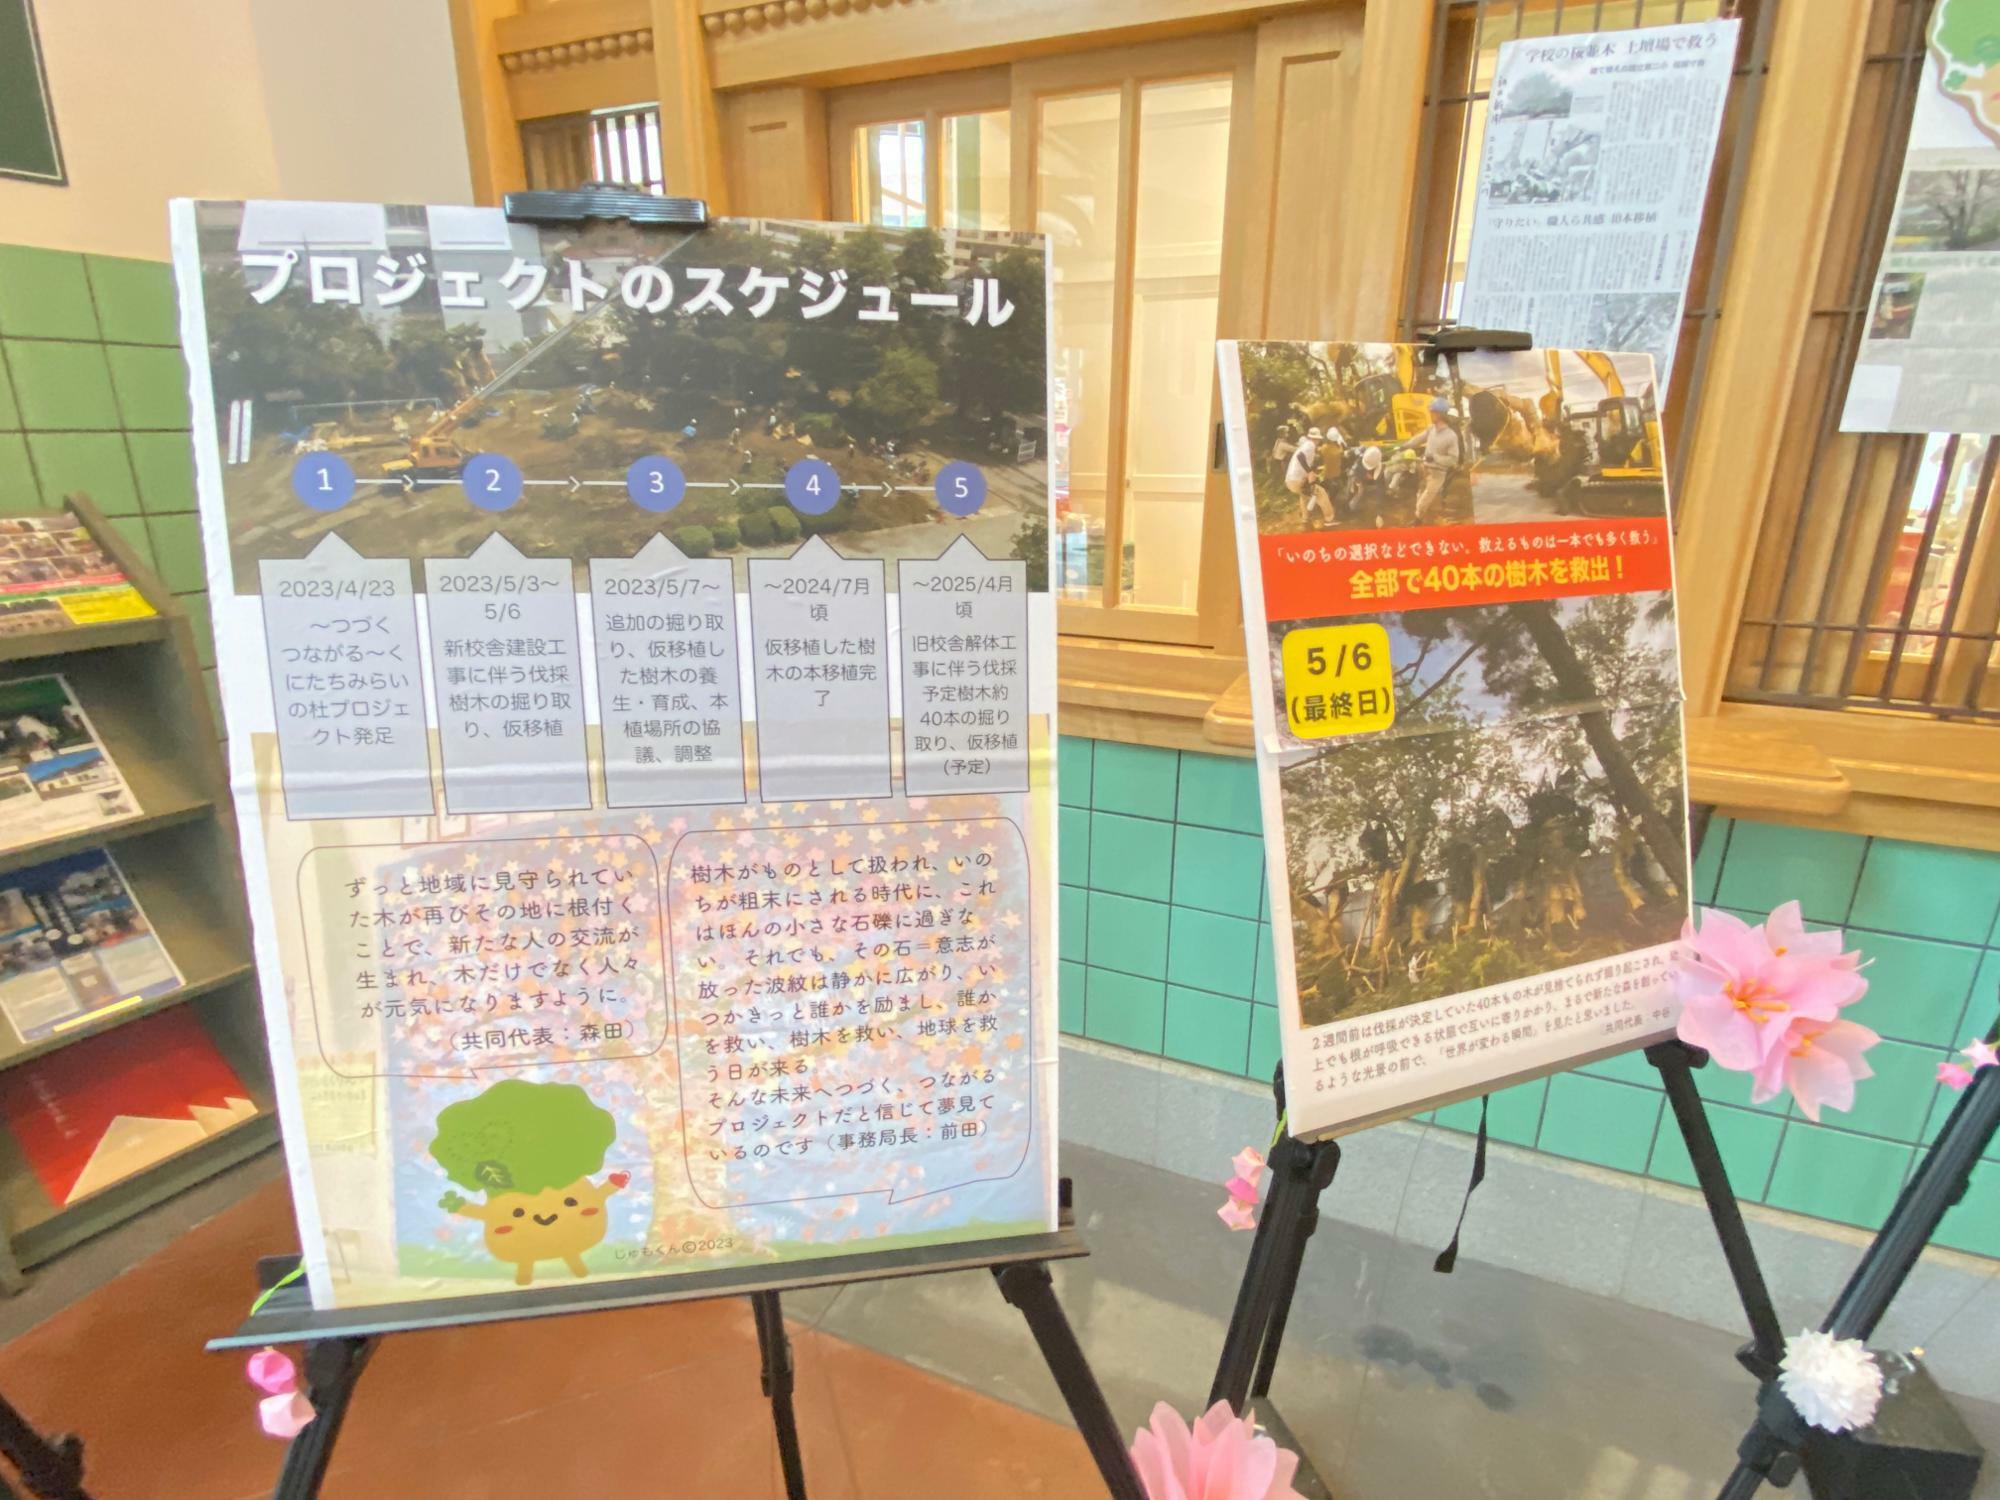 過去には、桜の植え替えプロジェクトの展示も